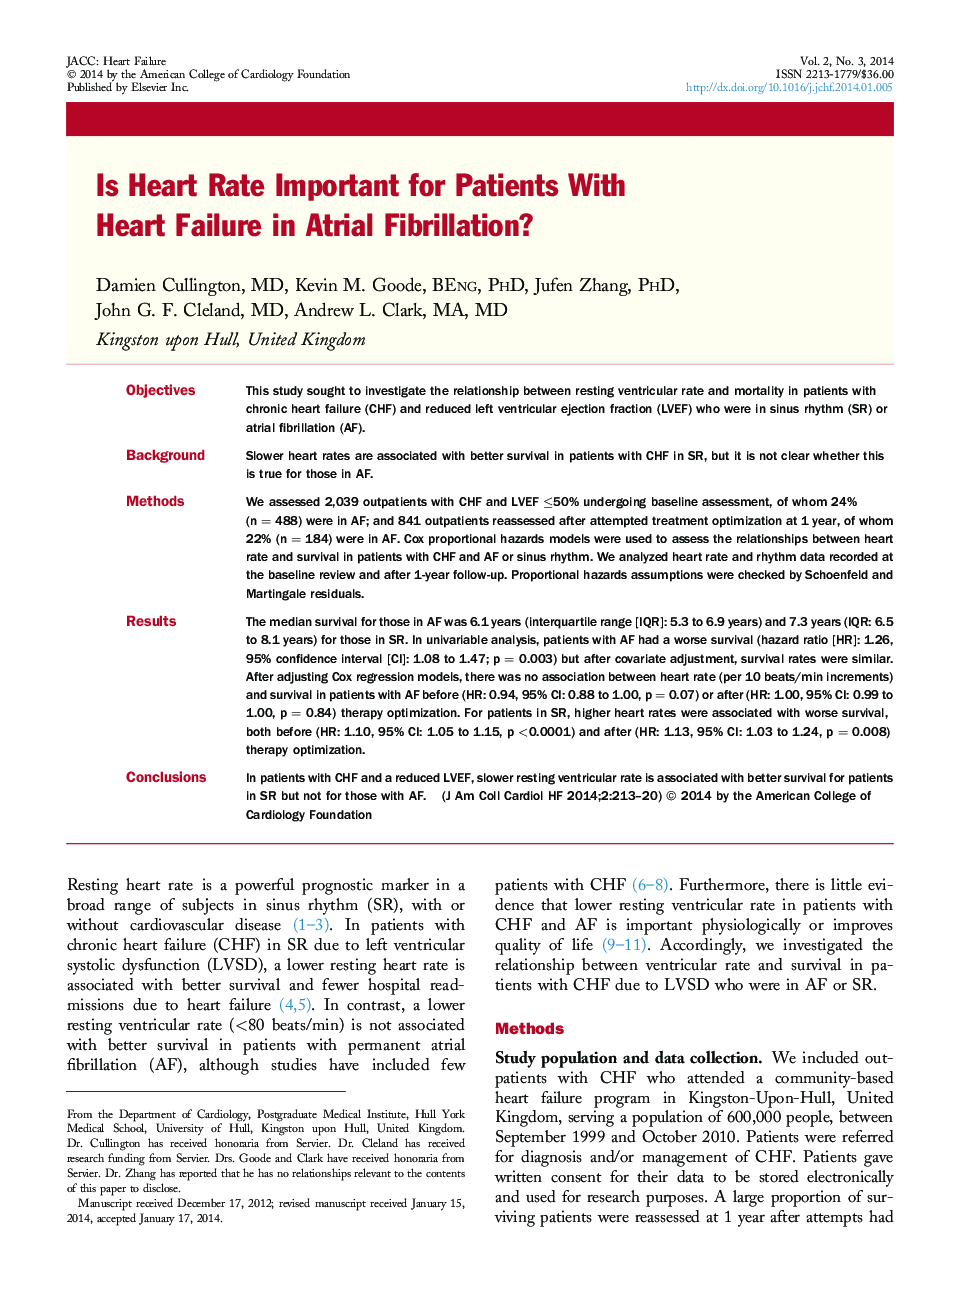 آیا ضربان قلب برای بیماران با نارسایی قلب در فیبریلاسیون دهلیزی مهم است؟ 